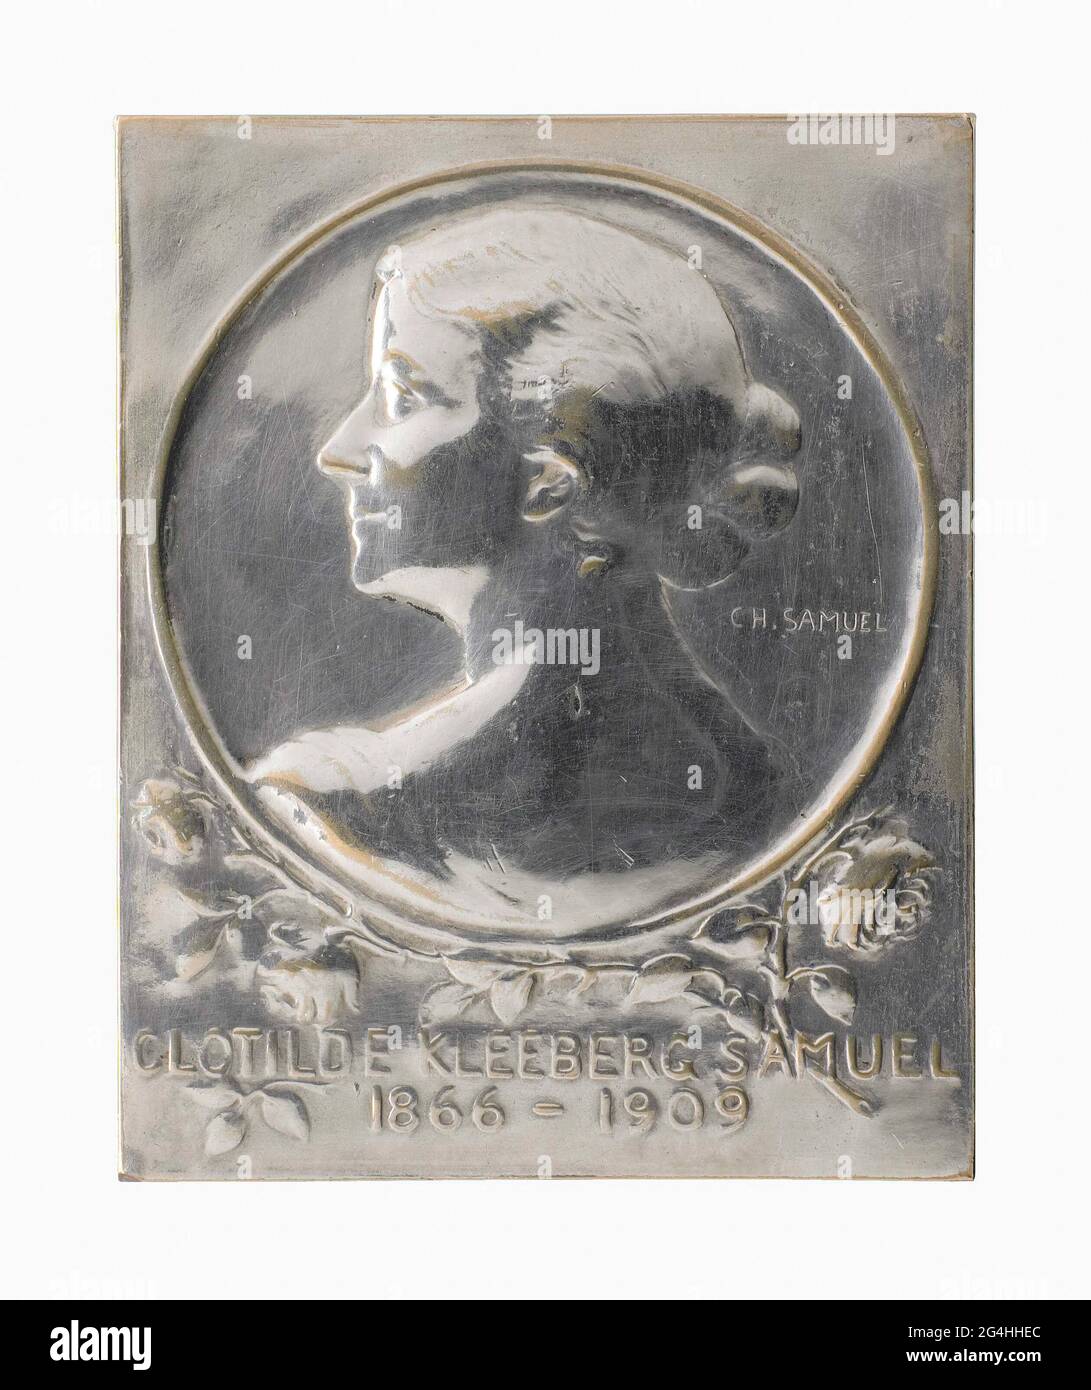 . Plaque de bronze argenté avec le portrait de Clotilde Kleeberg-Samuel (1866-1909), avec inscription de dédicace sur le dos : clotildae // kleberg-samvel // amici mucisqve dediti // qvod nermos mire pepvlit // hoc monumentum // p.c. // carolvs samvel // caram conjvgis effigem // tarte à aere // sc. Le portrait est montré dans le soulagement des basses minces et vu sur son dos et l'épaule. Banque D'Images